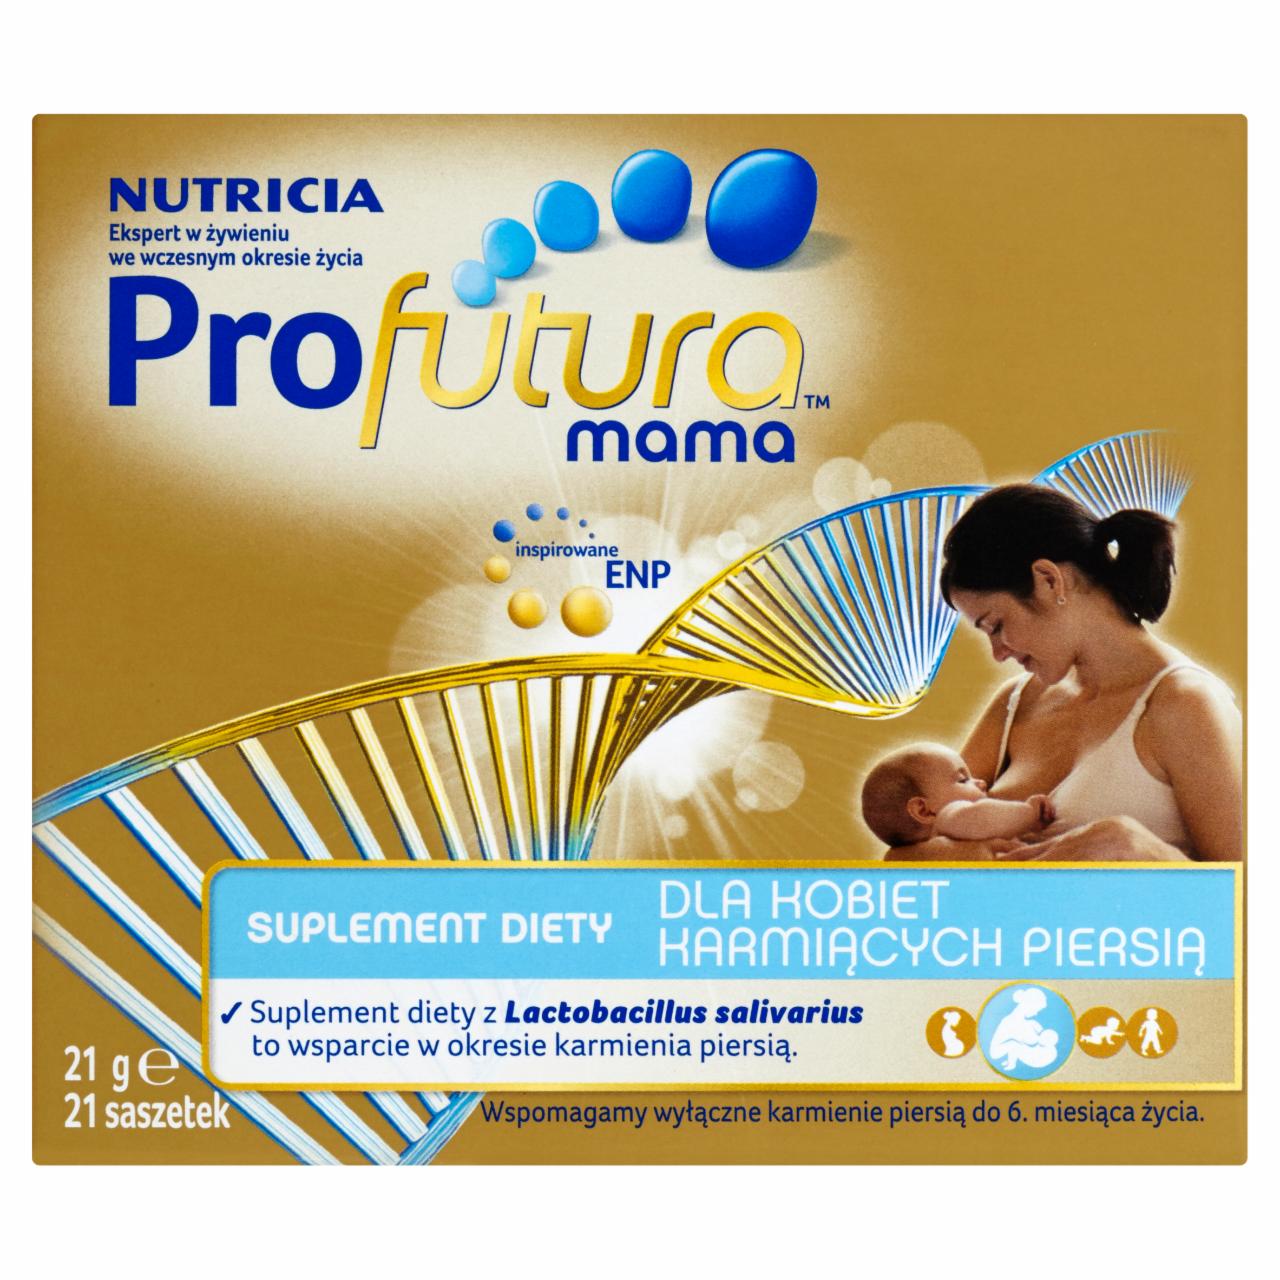 Zdjęcia - Nutricia Profutura Mama Suplement diety dla kobiet karmiących piersią 21 g (21 saszetek)